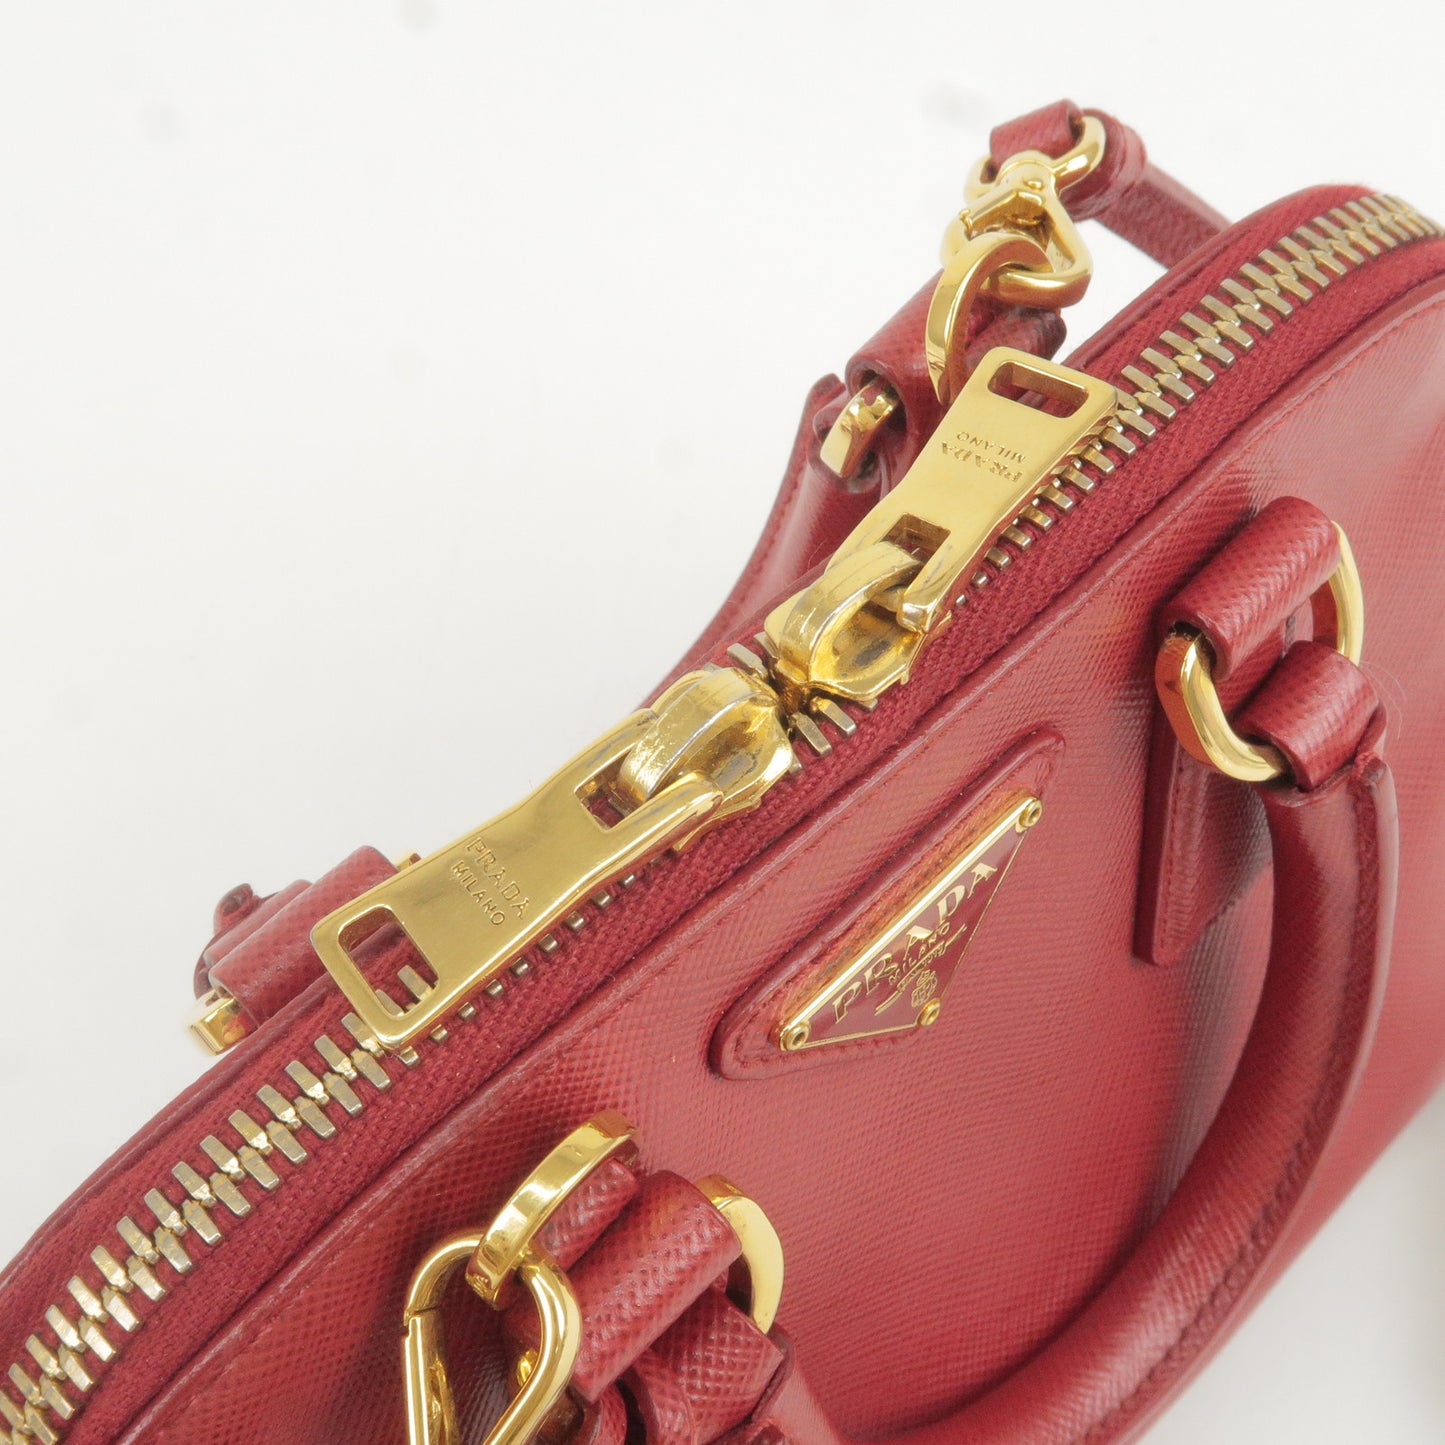 PRADA Leather Promenade Mini 2Way Bag Shoulder Bag Red BL0851